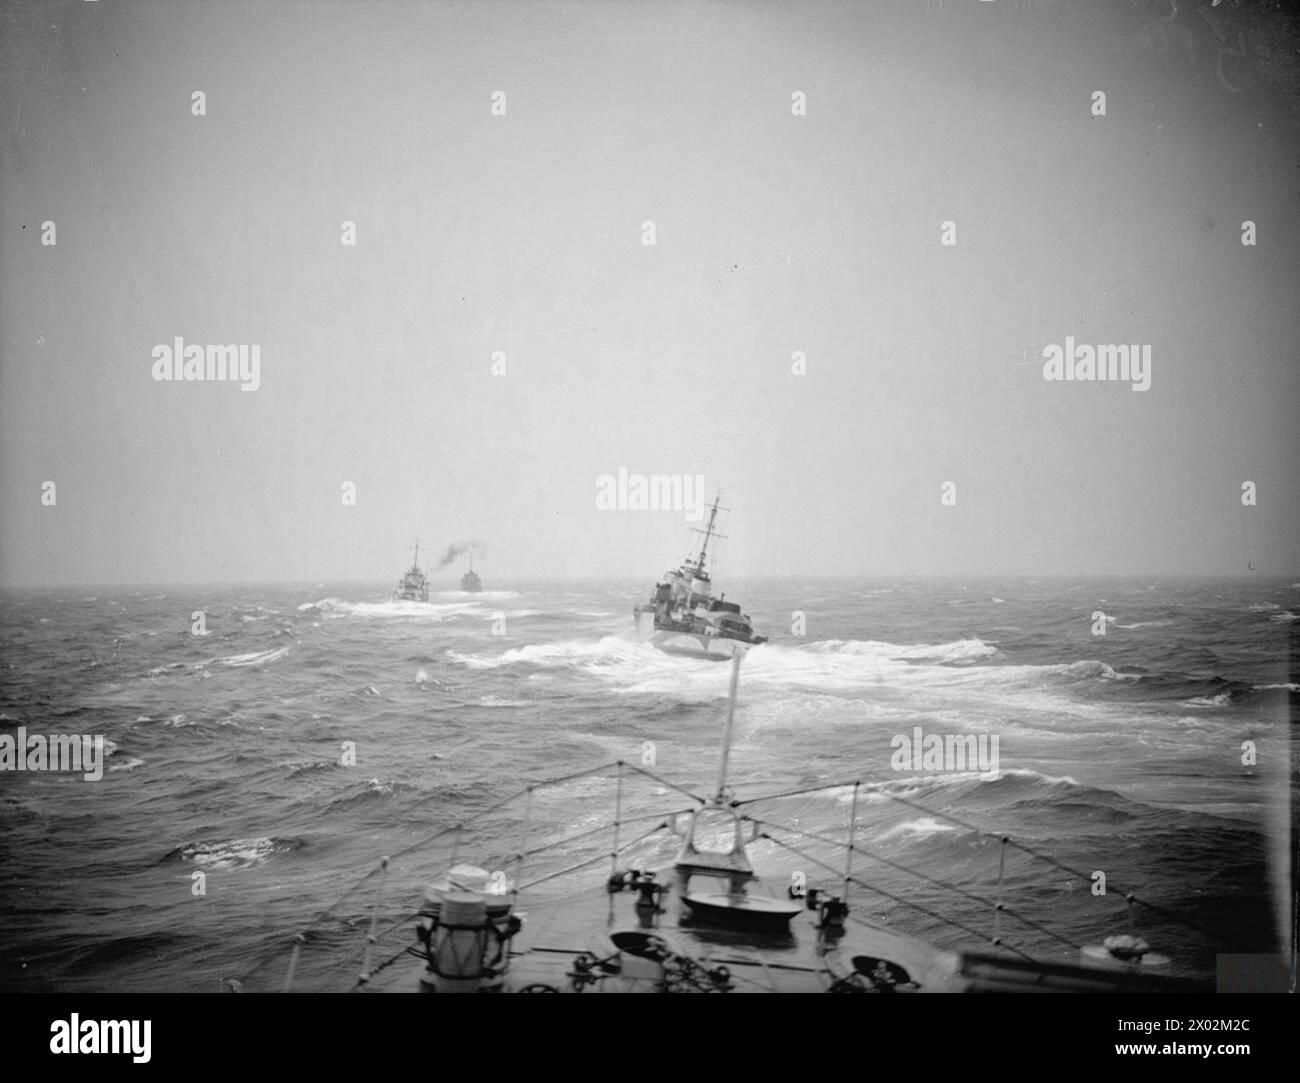 NAVIRES DE LA FLOTTE LOCALE GARDANT LES ROUTES COMMERCIALES DU NORD. DU 26 AU 29 MAI 1942, À BORD DU DESTROYER HMS WHEATLAND DANS LES EAUX ISLANDAISES ET EN ROUTE VERS SCAPA. - Les destroyers de classe Hunt, HMS MIDDLETON, LAMERTON et BLANKNEY en ligne en mer agitée Banque D'Images